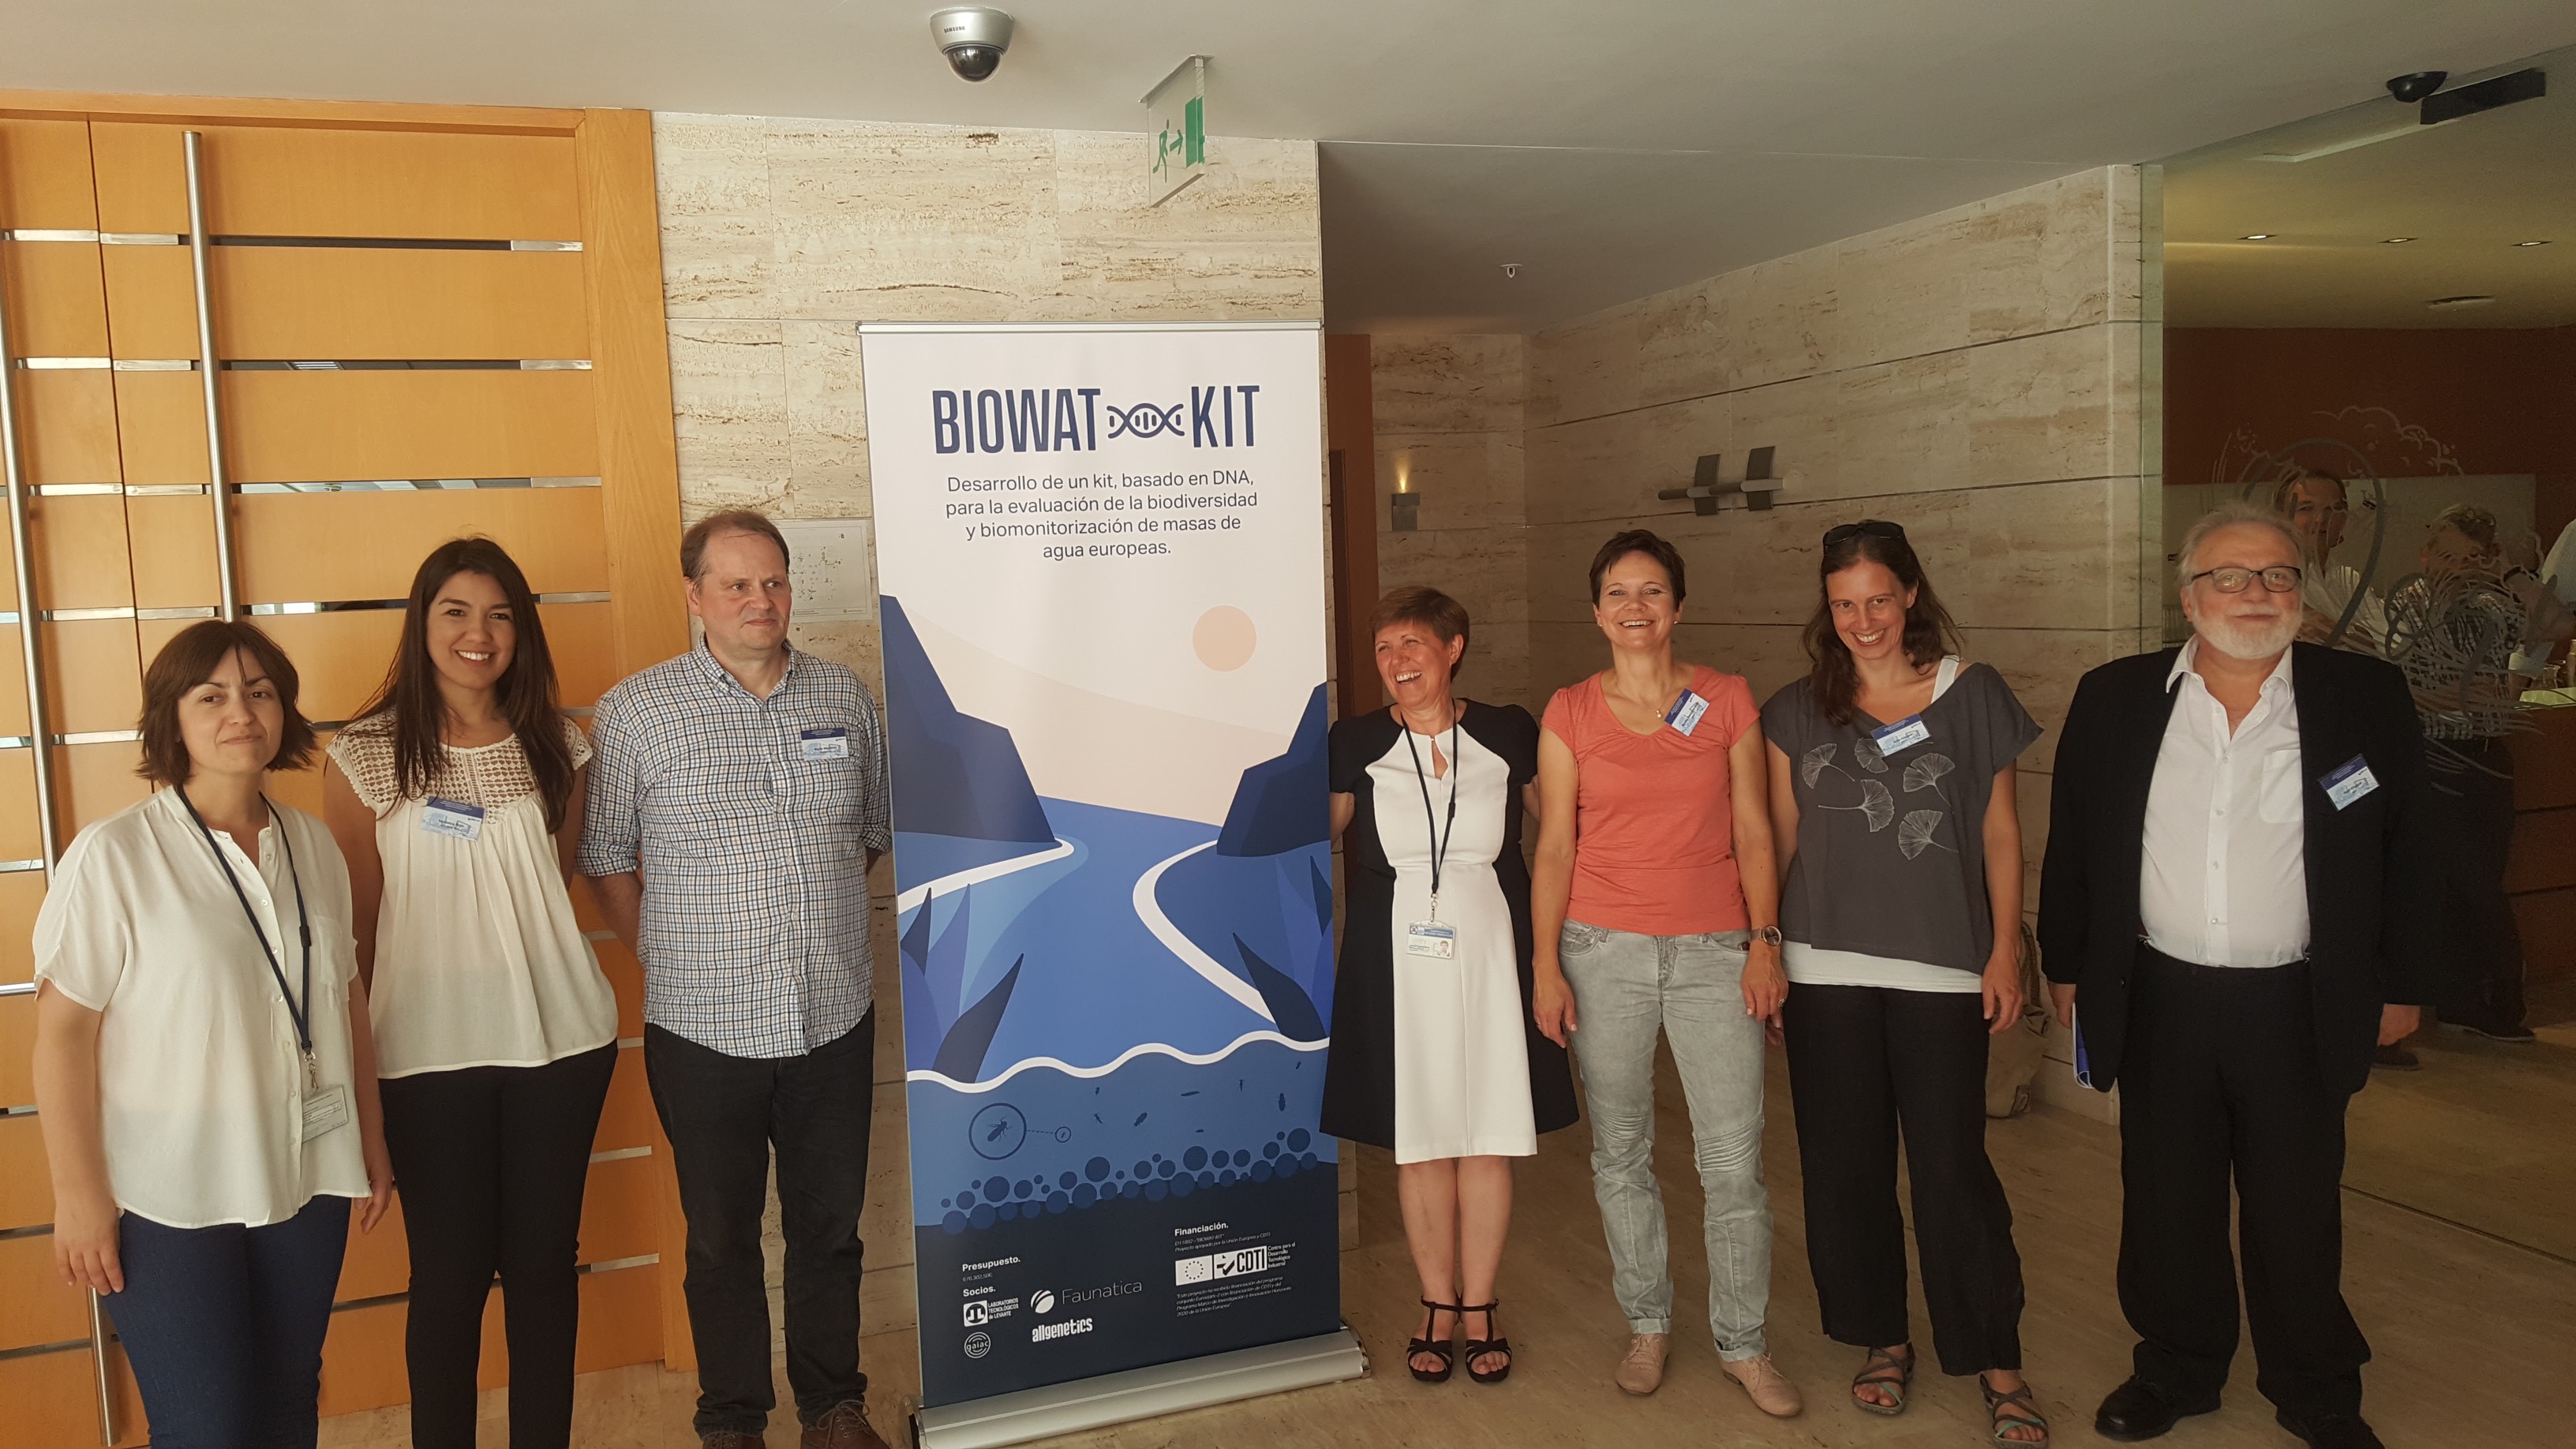 BIOWAT-KIT project led by Laboratorios Tecnolgicos de Levante (LTL) starts